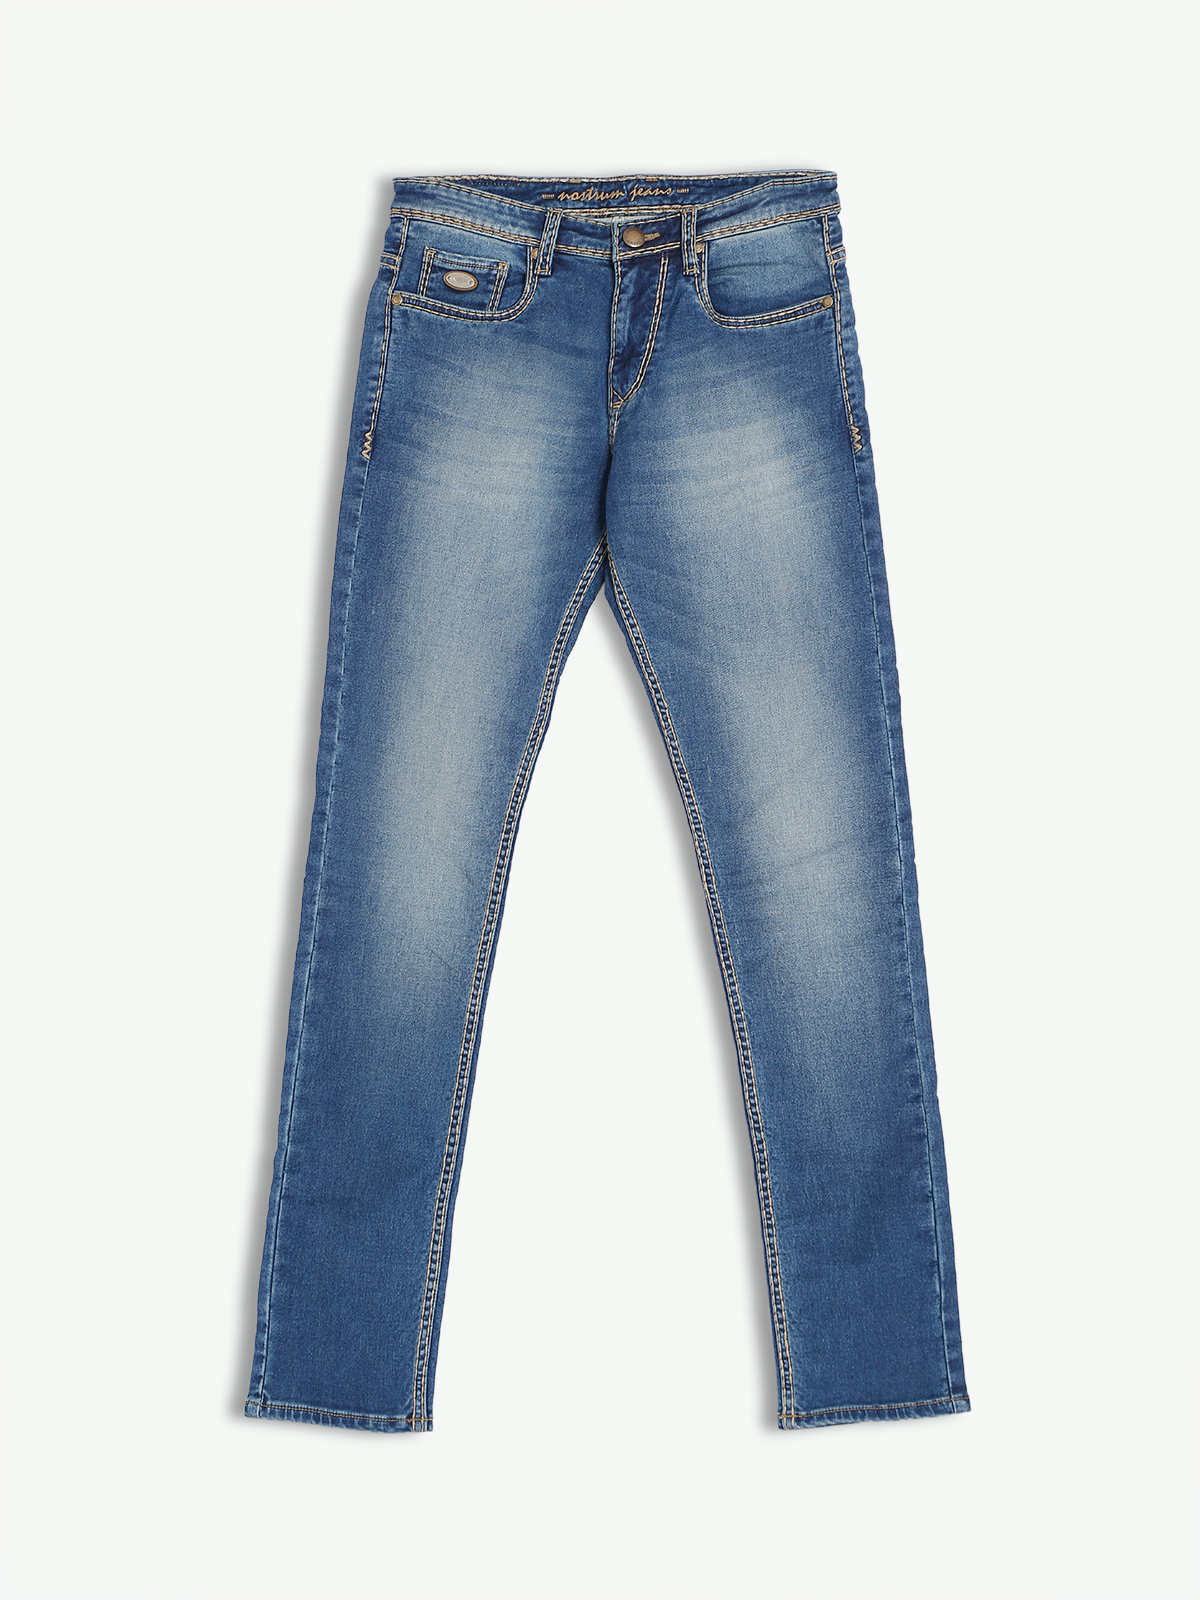 Nostrum blue washed slim fit jeans - G3-MJE4431